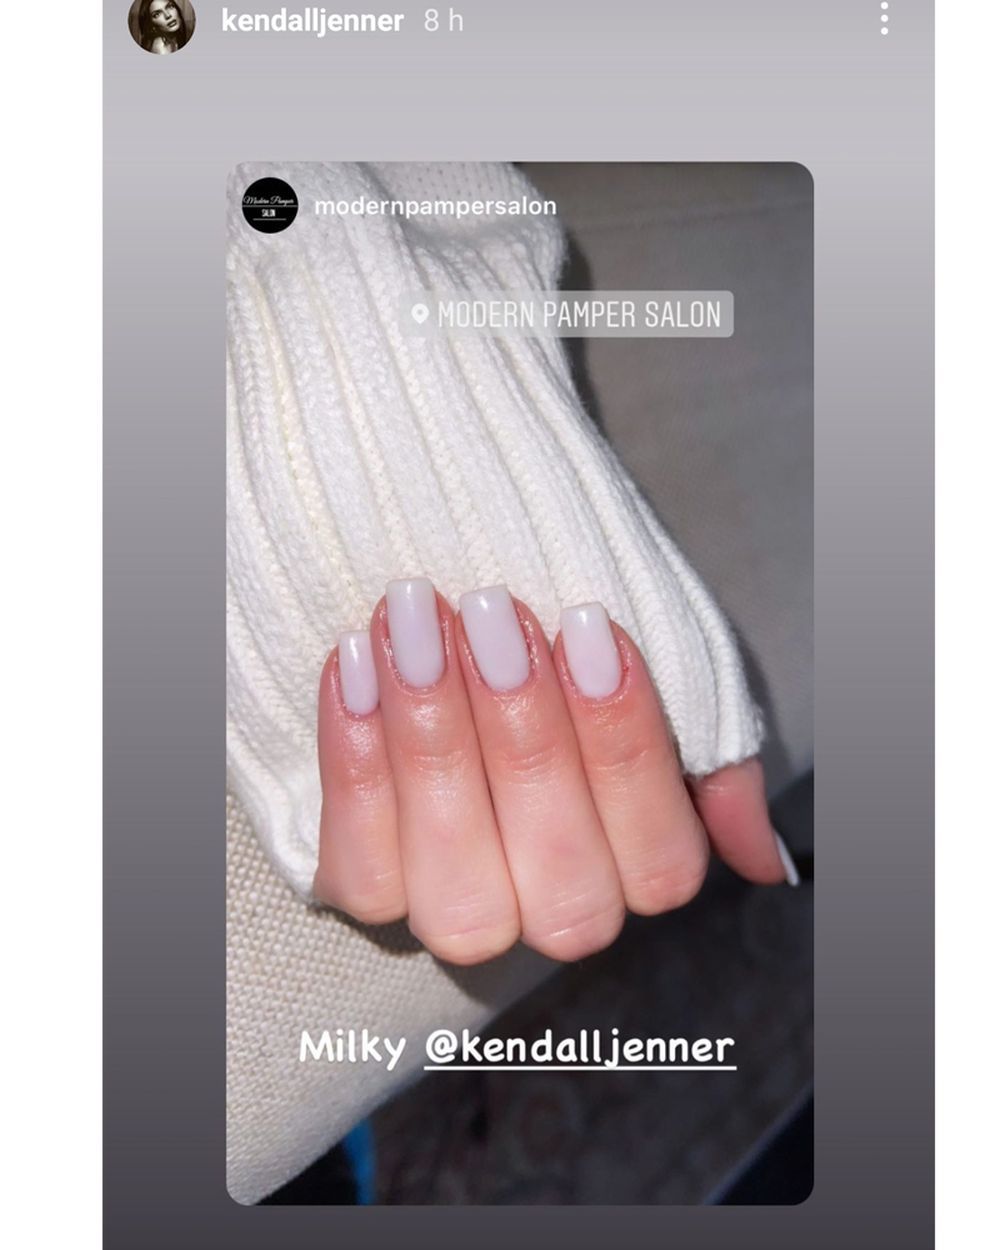 Kendall Jenner y sus uñas en blanco extralargas o Milky Nails de gel.